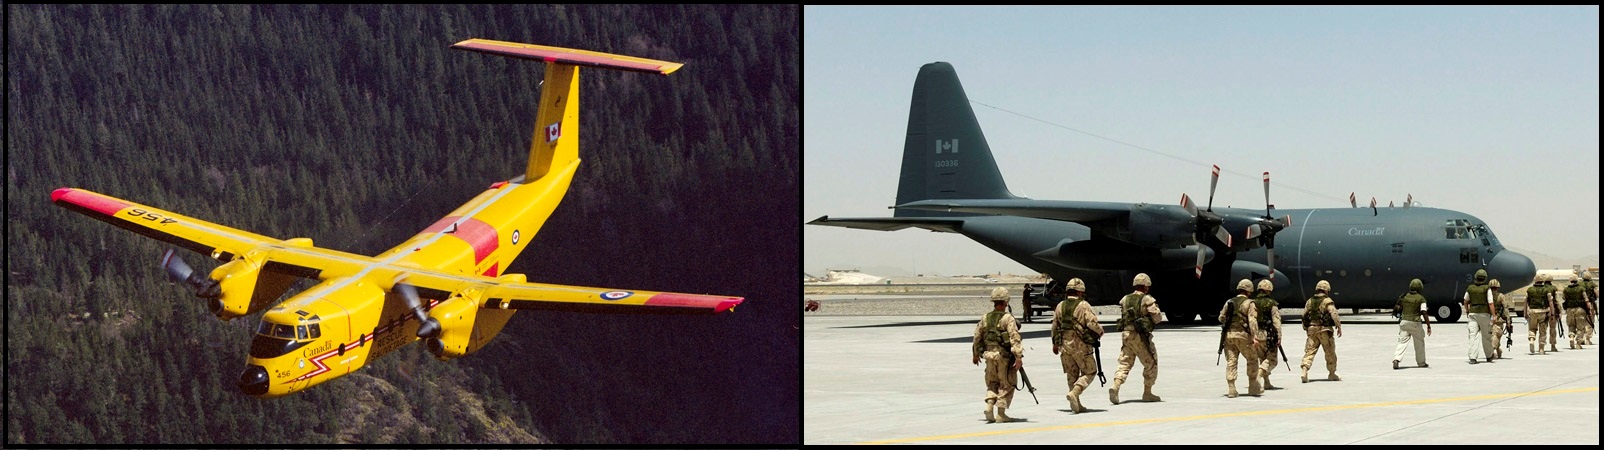 Samoloty CC-115 i CC-130 Hercules. /Fot, RCAF | www.rcaf-arc.forces.gc.ca